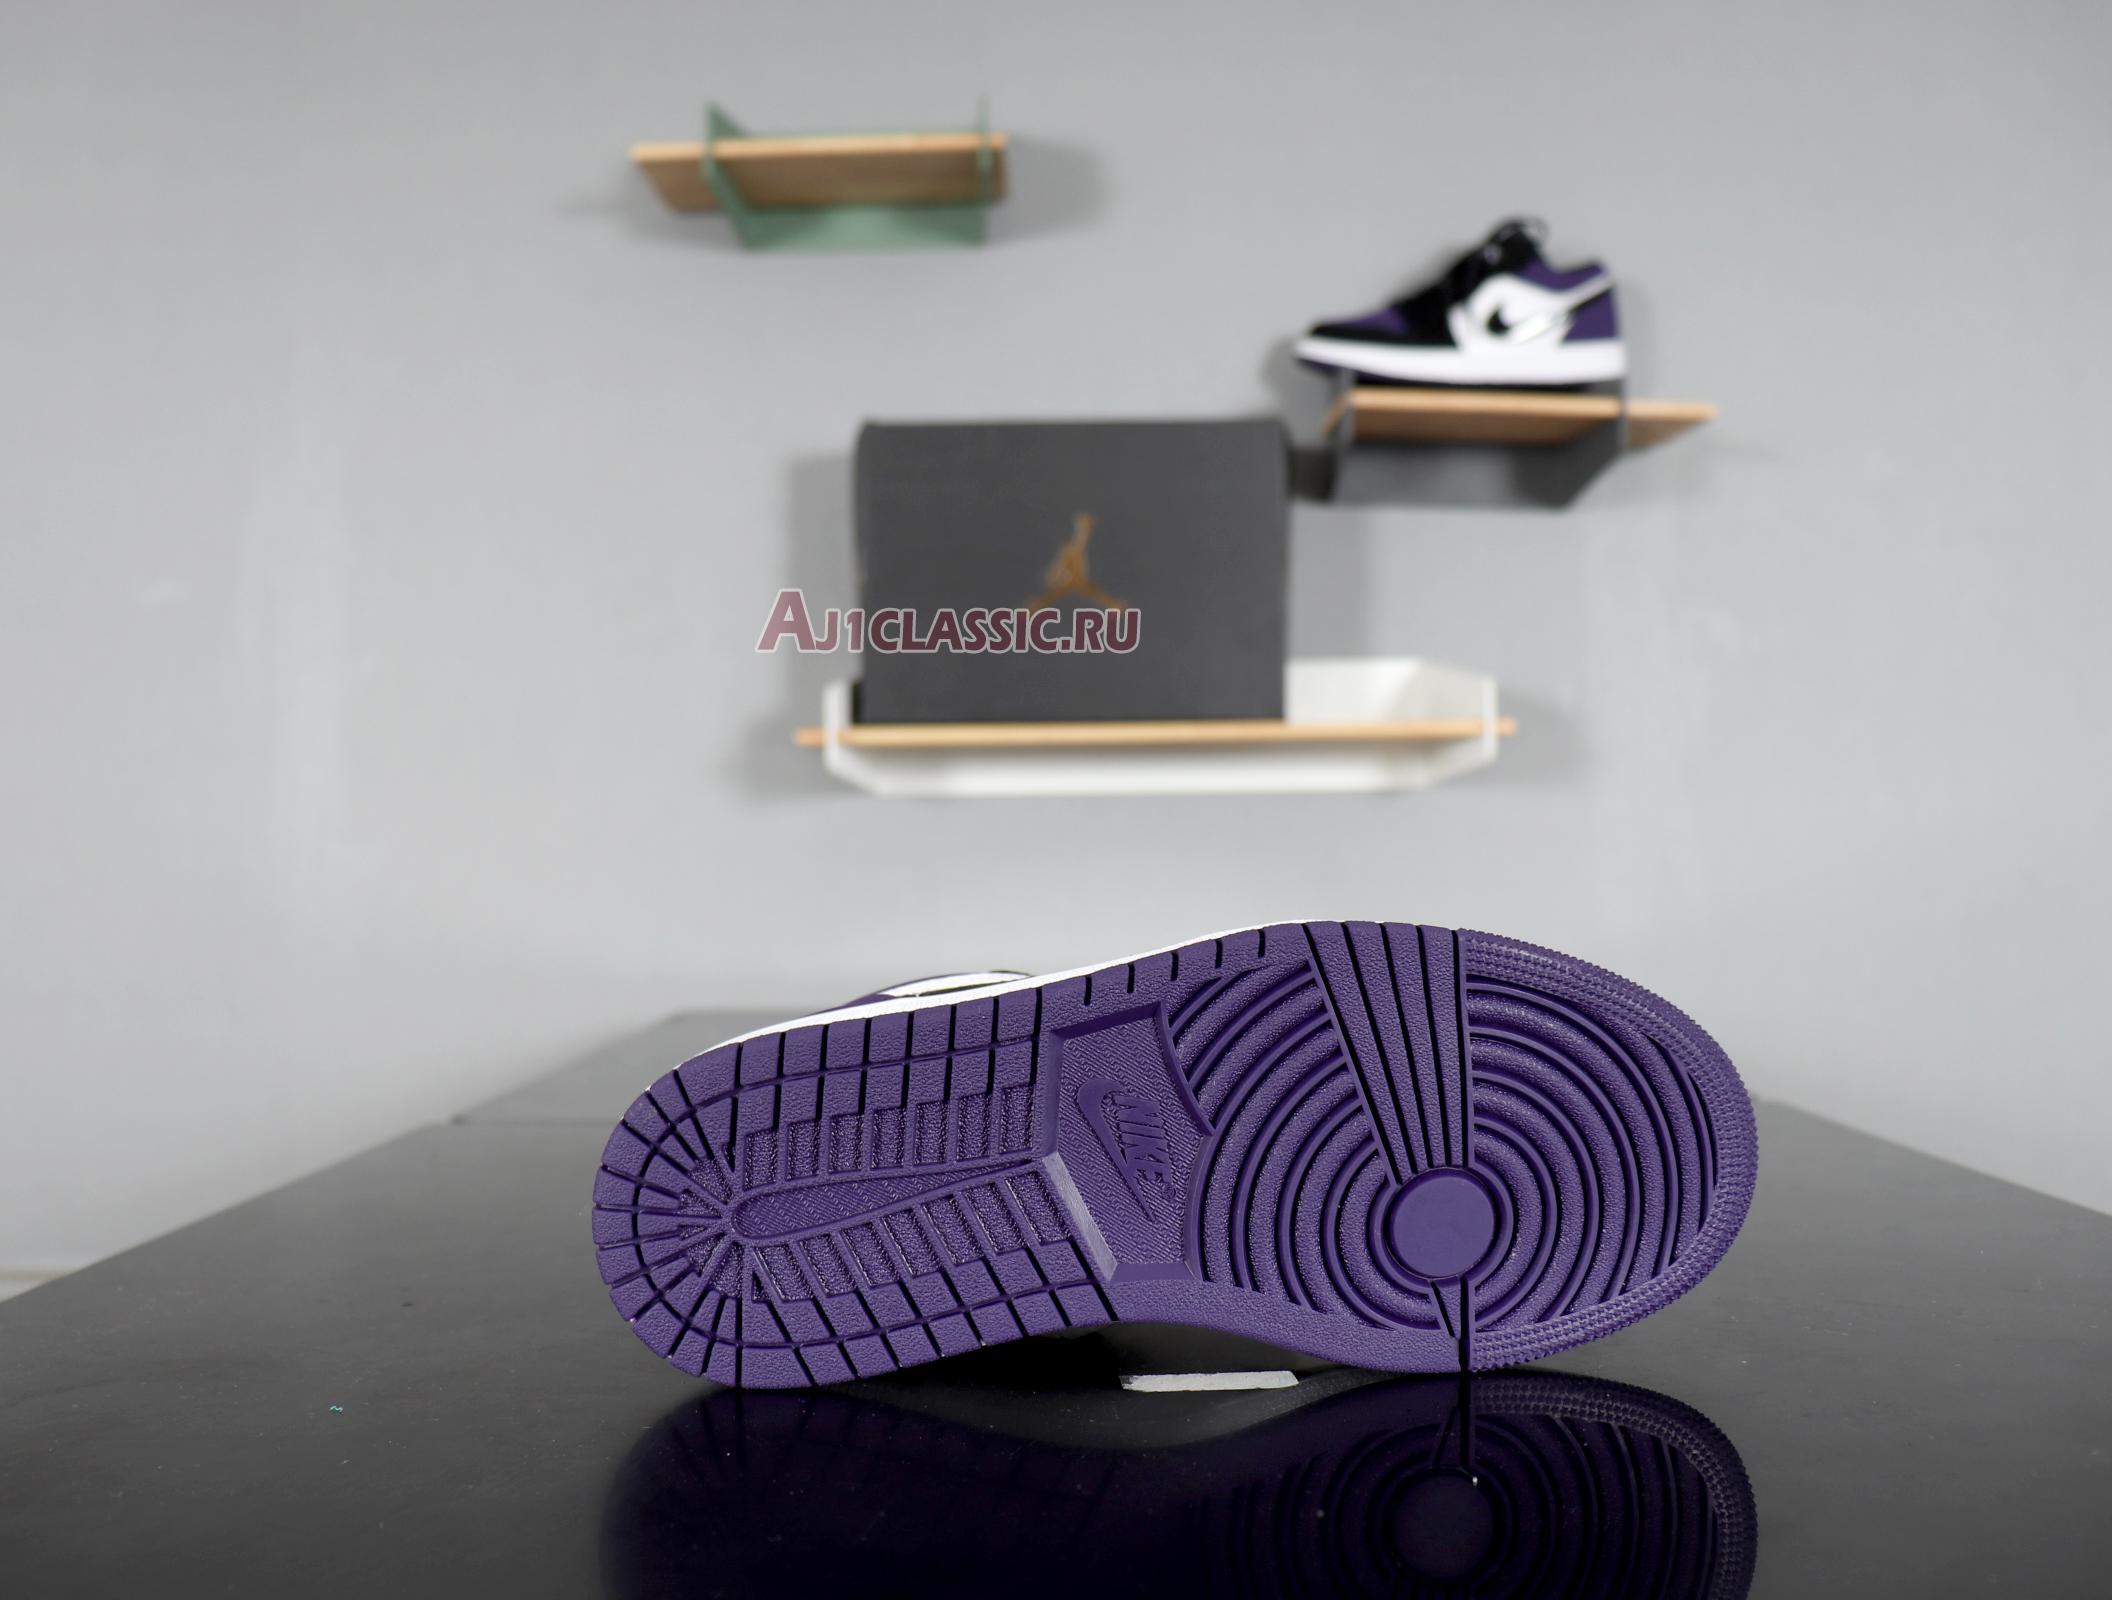 Air Jordan 1 Low "Court Purple" 553558-125